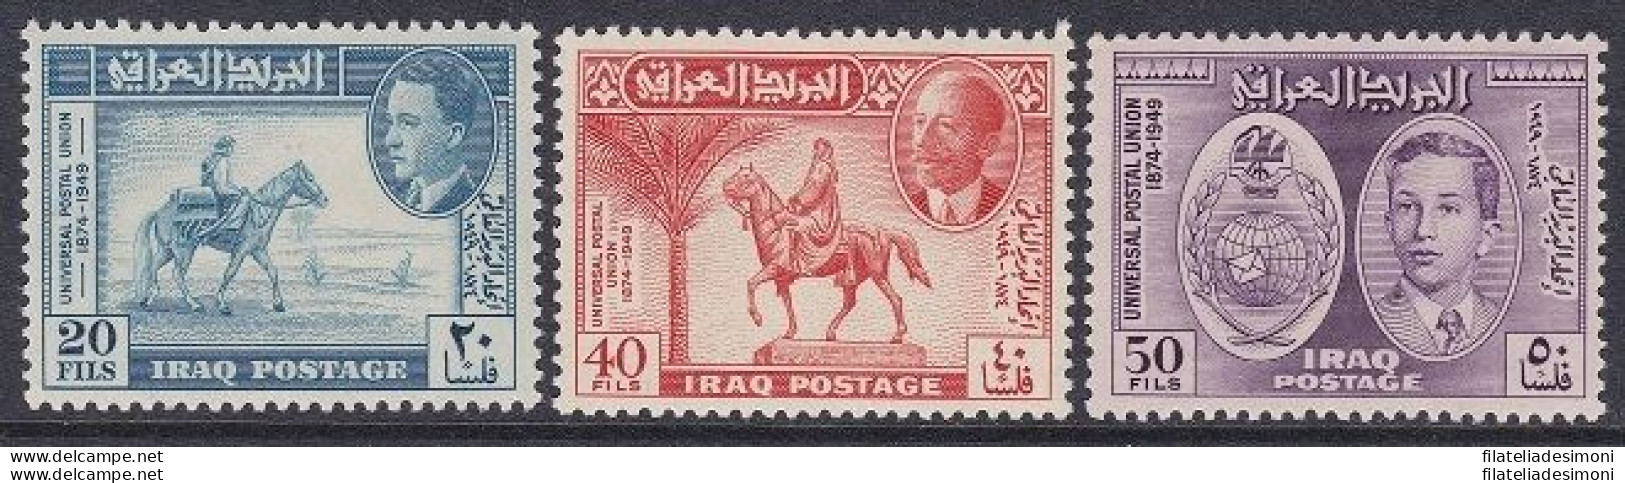 1949 IRAQ/IRAK - SG 339/341 Set Of 3 MNH/** - Iraq